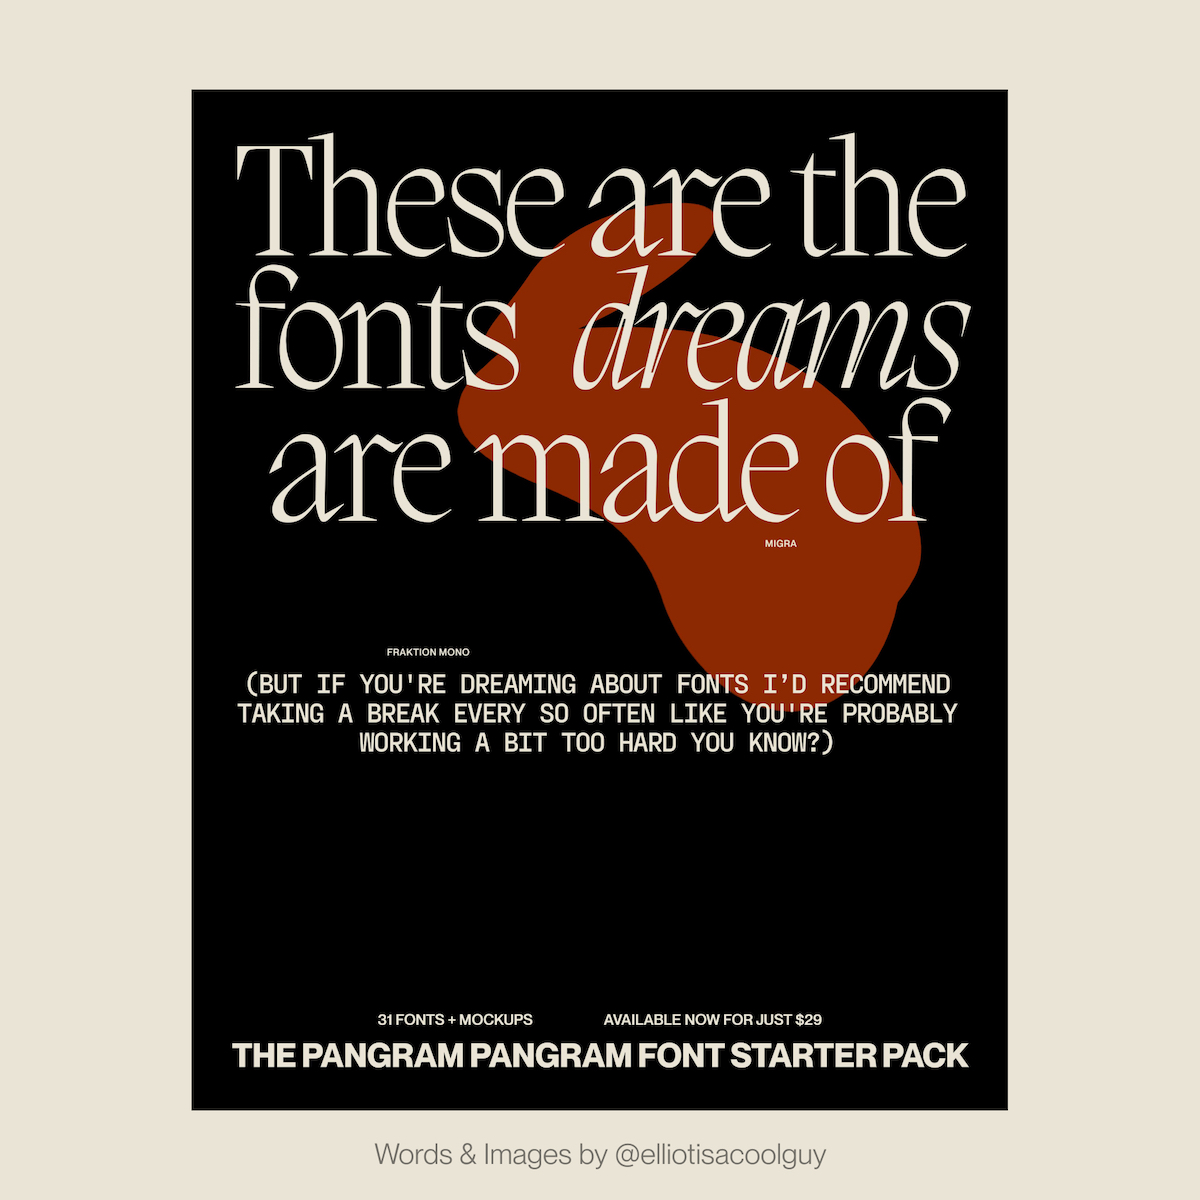 Pangram Pangram font starter pack